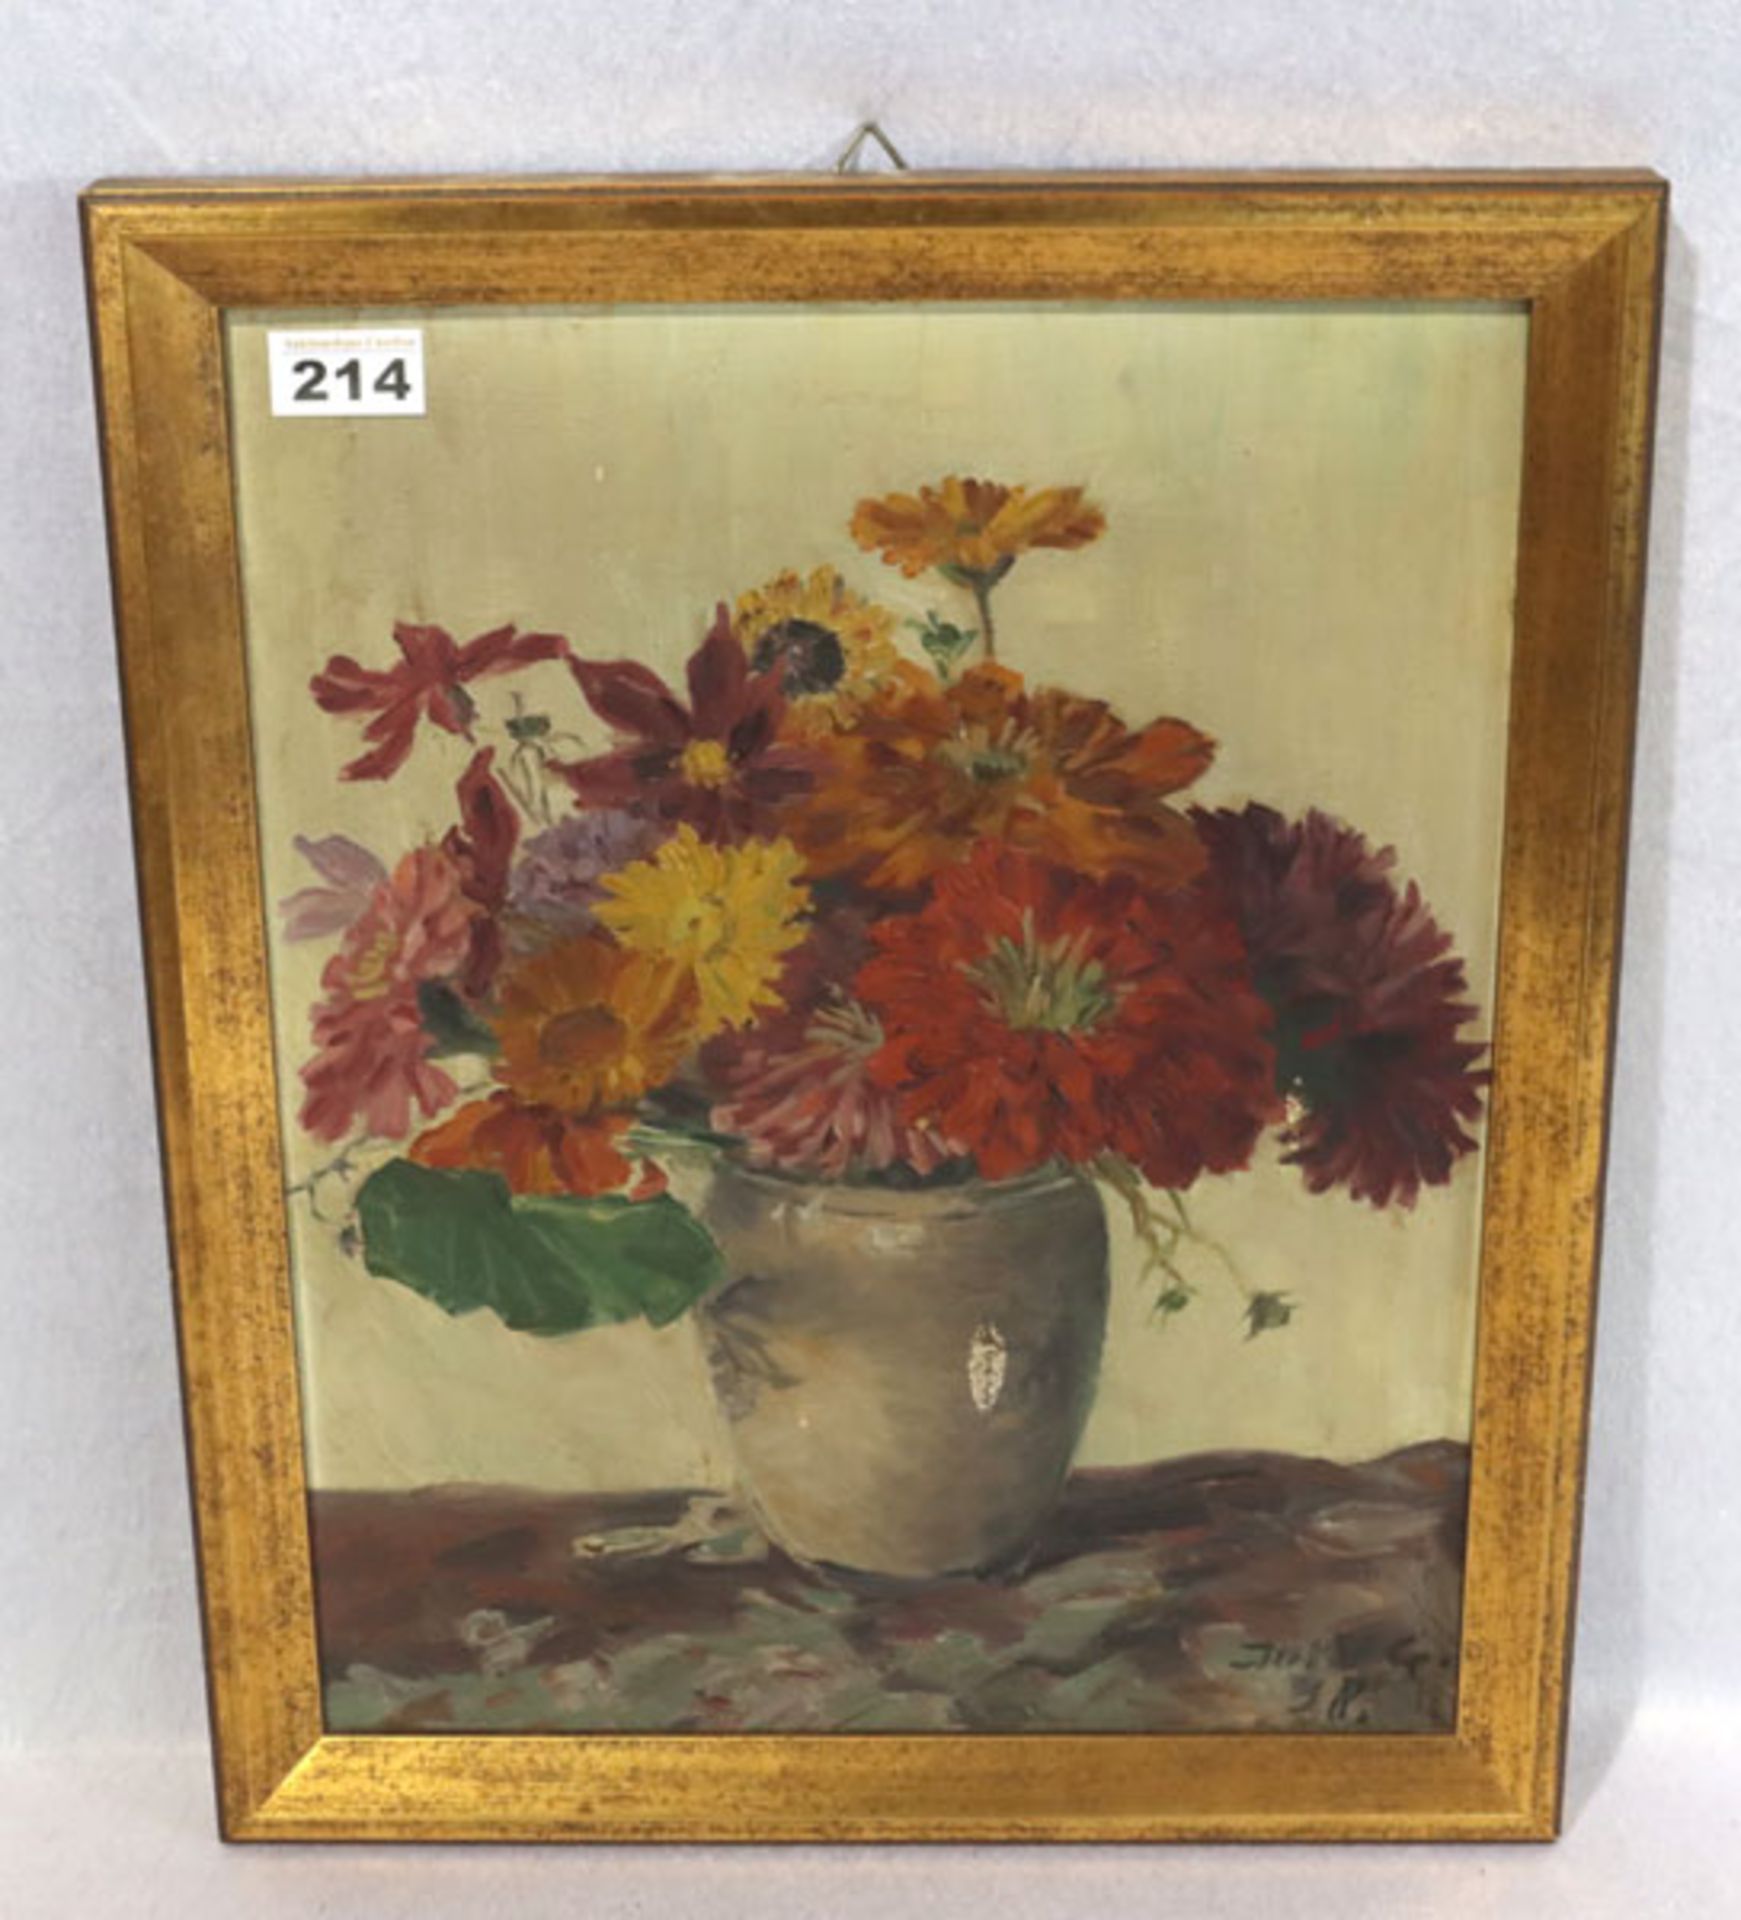 Gemälde ÖL/Malkarton 'Blumenstrauß in Vase', monogrammiert Jul.V.G. für Julius Wilhelm